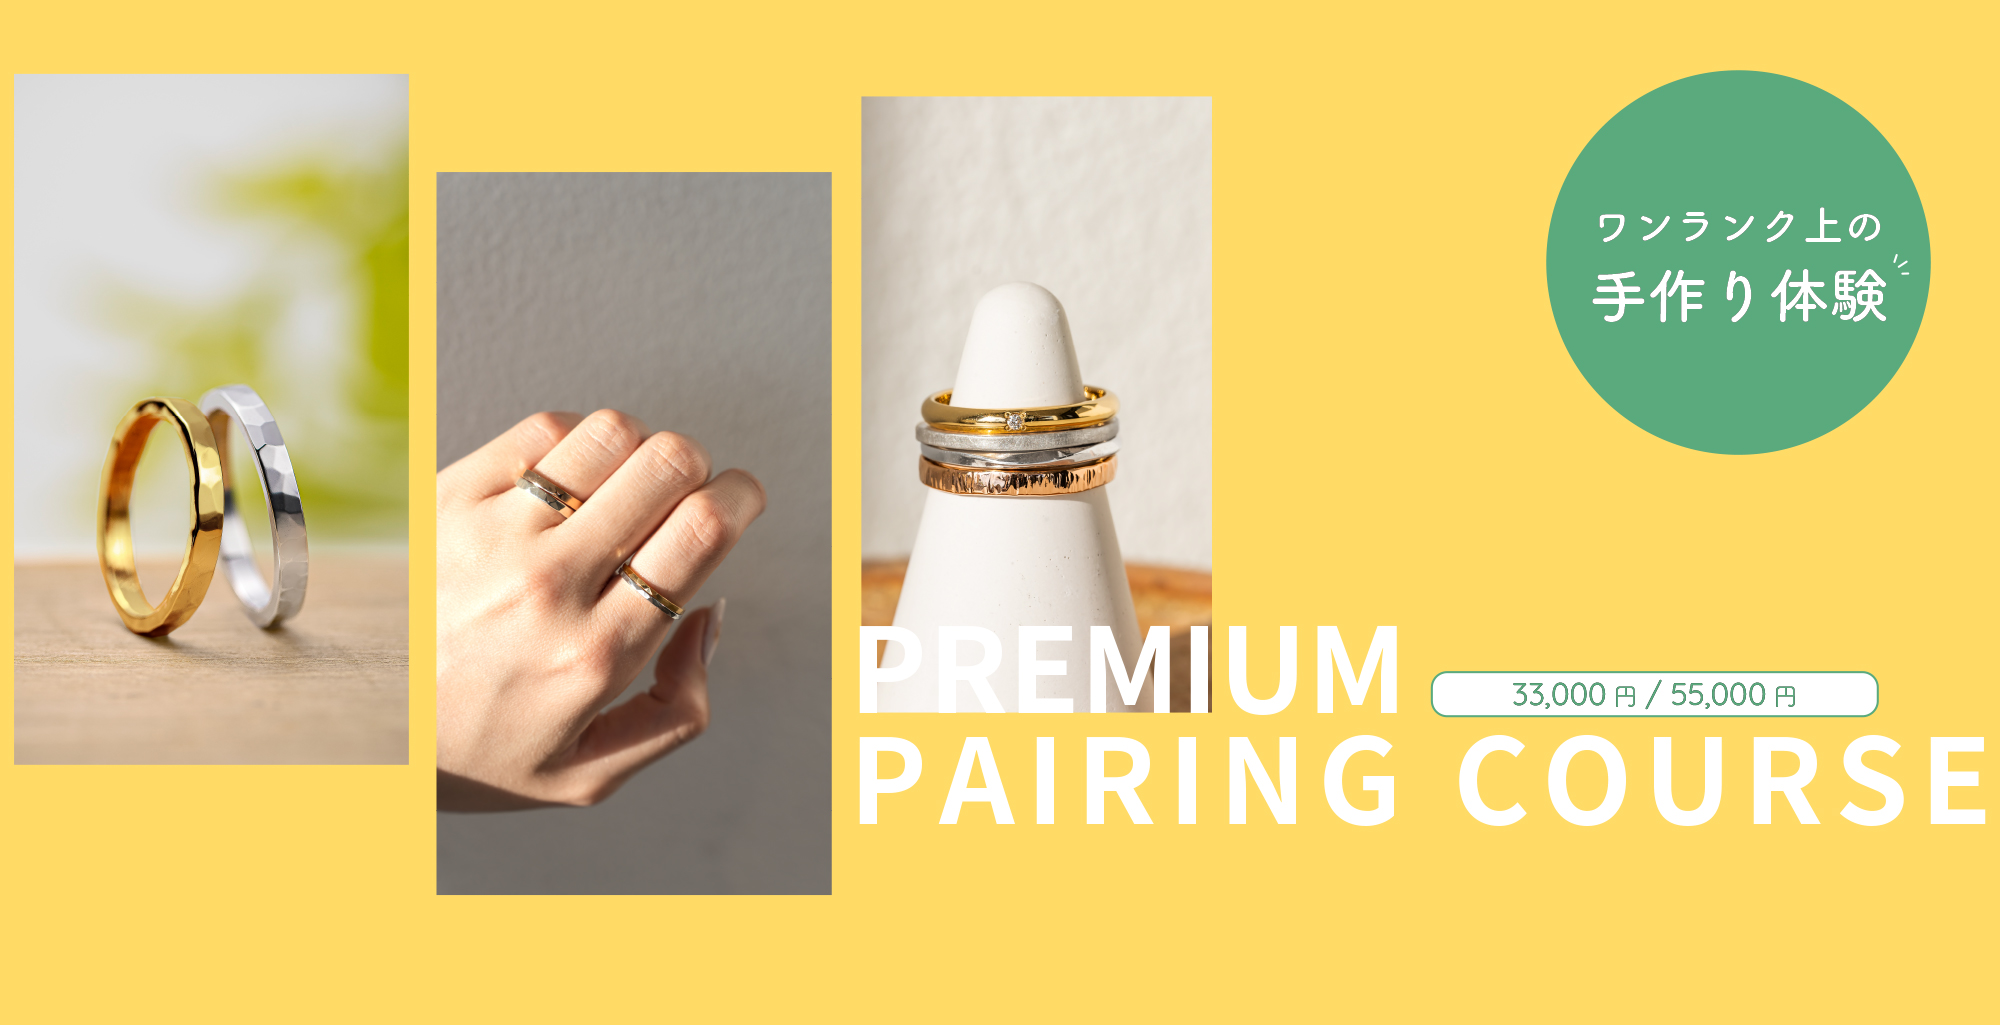 preium pair ring